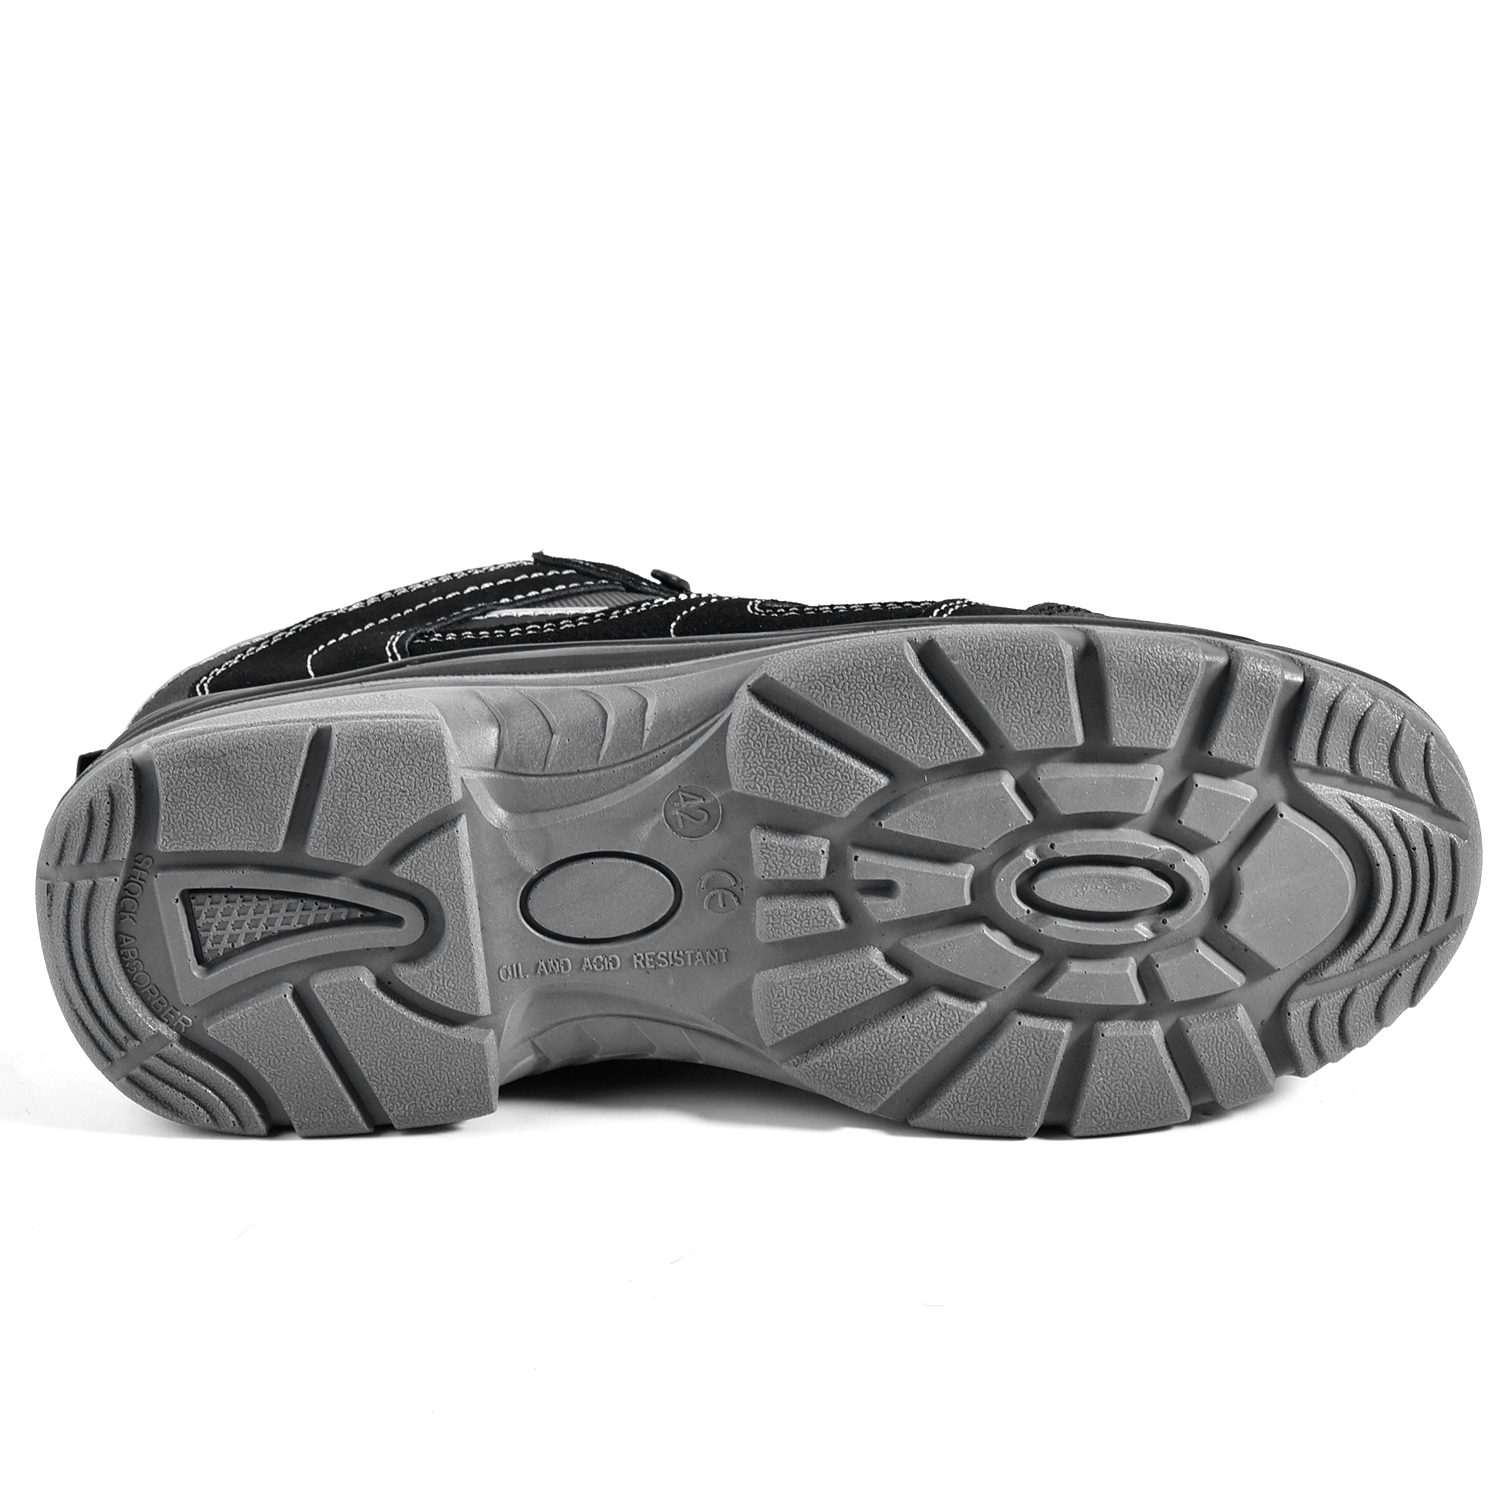 Zapatos de seguridad de cuero sin metal L-7502